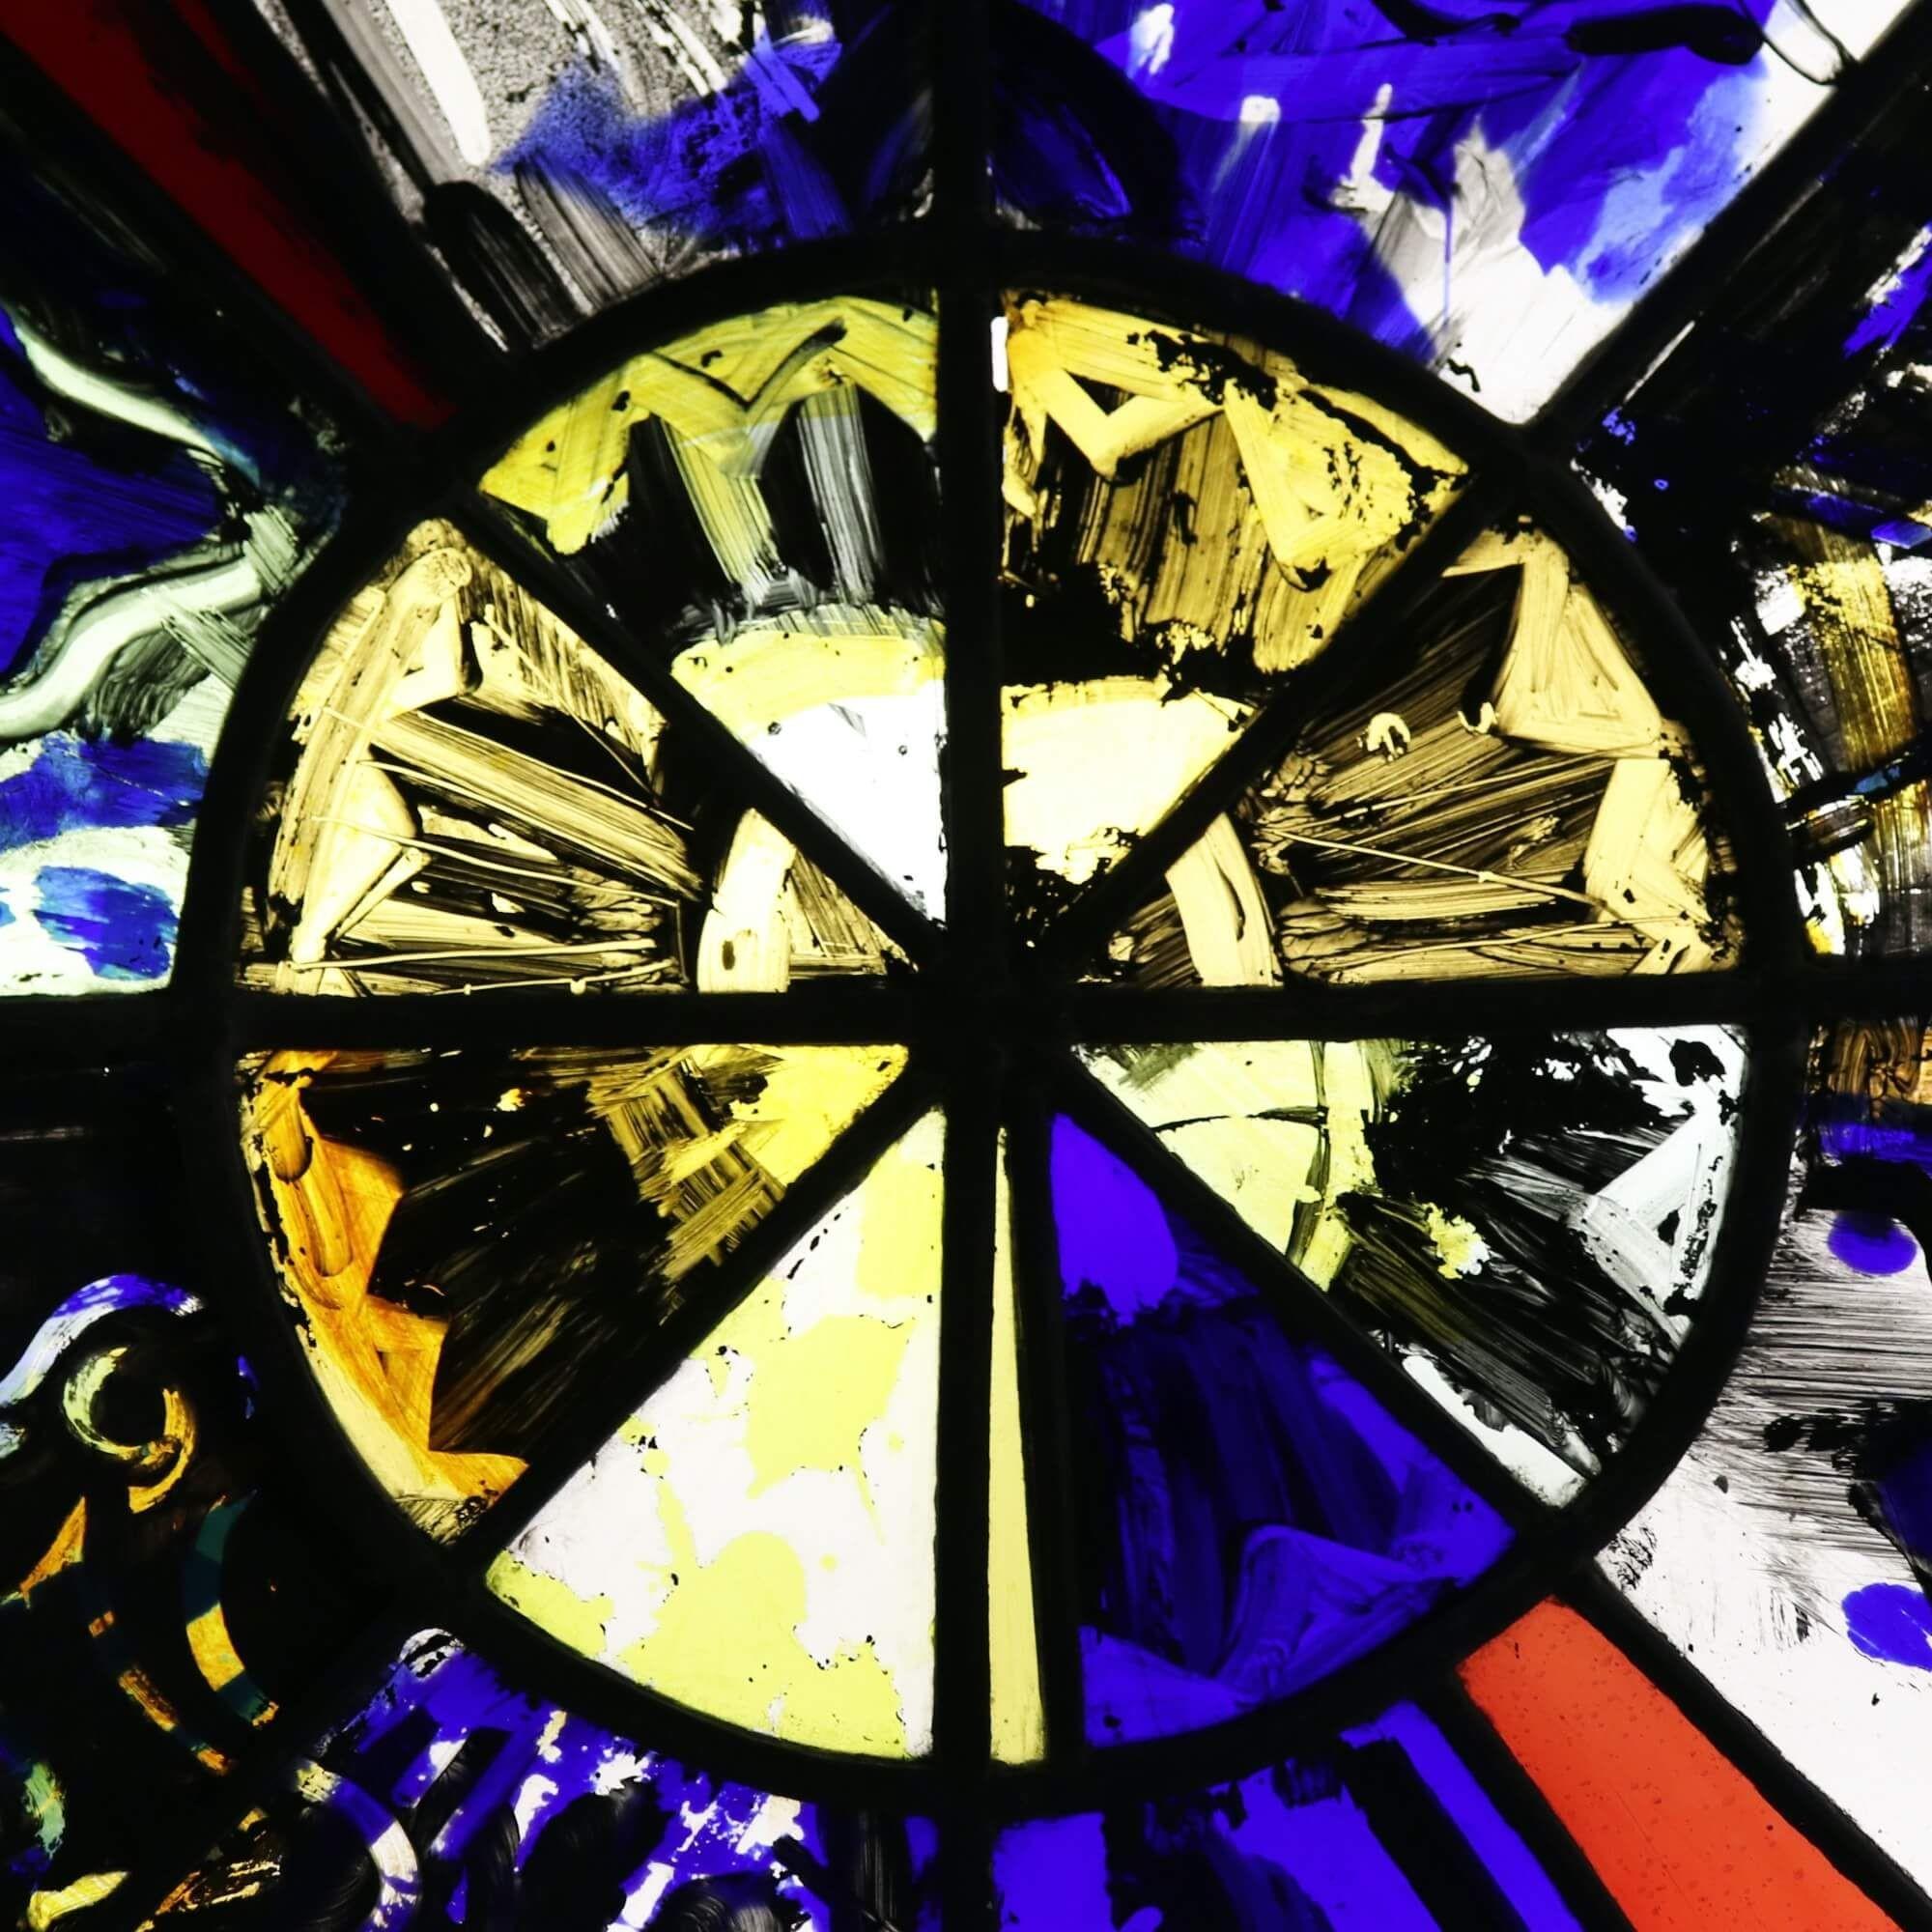 Un vitrail moderne du Studio de Patrick Reyntiens (1925-2021). Attribué à l'artiste, ce panneau de vitrail représente un motif en forme de soleil avec des détails abstraits peints à la main, y compris ce qui semble être un poisson sur la moitié